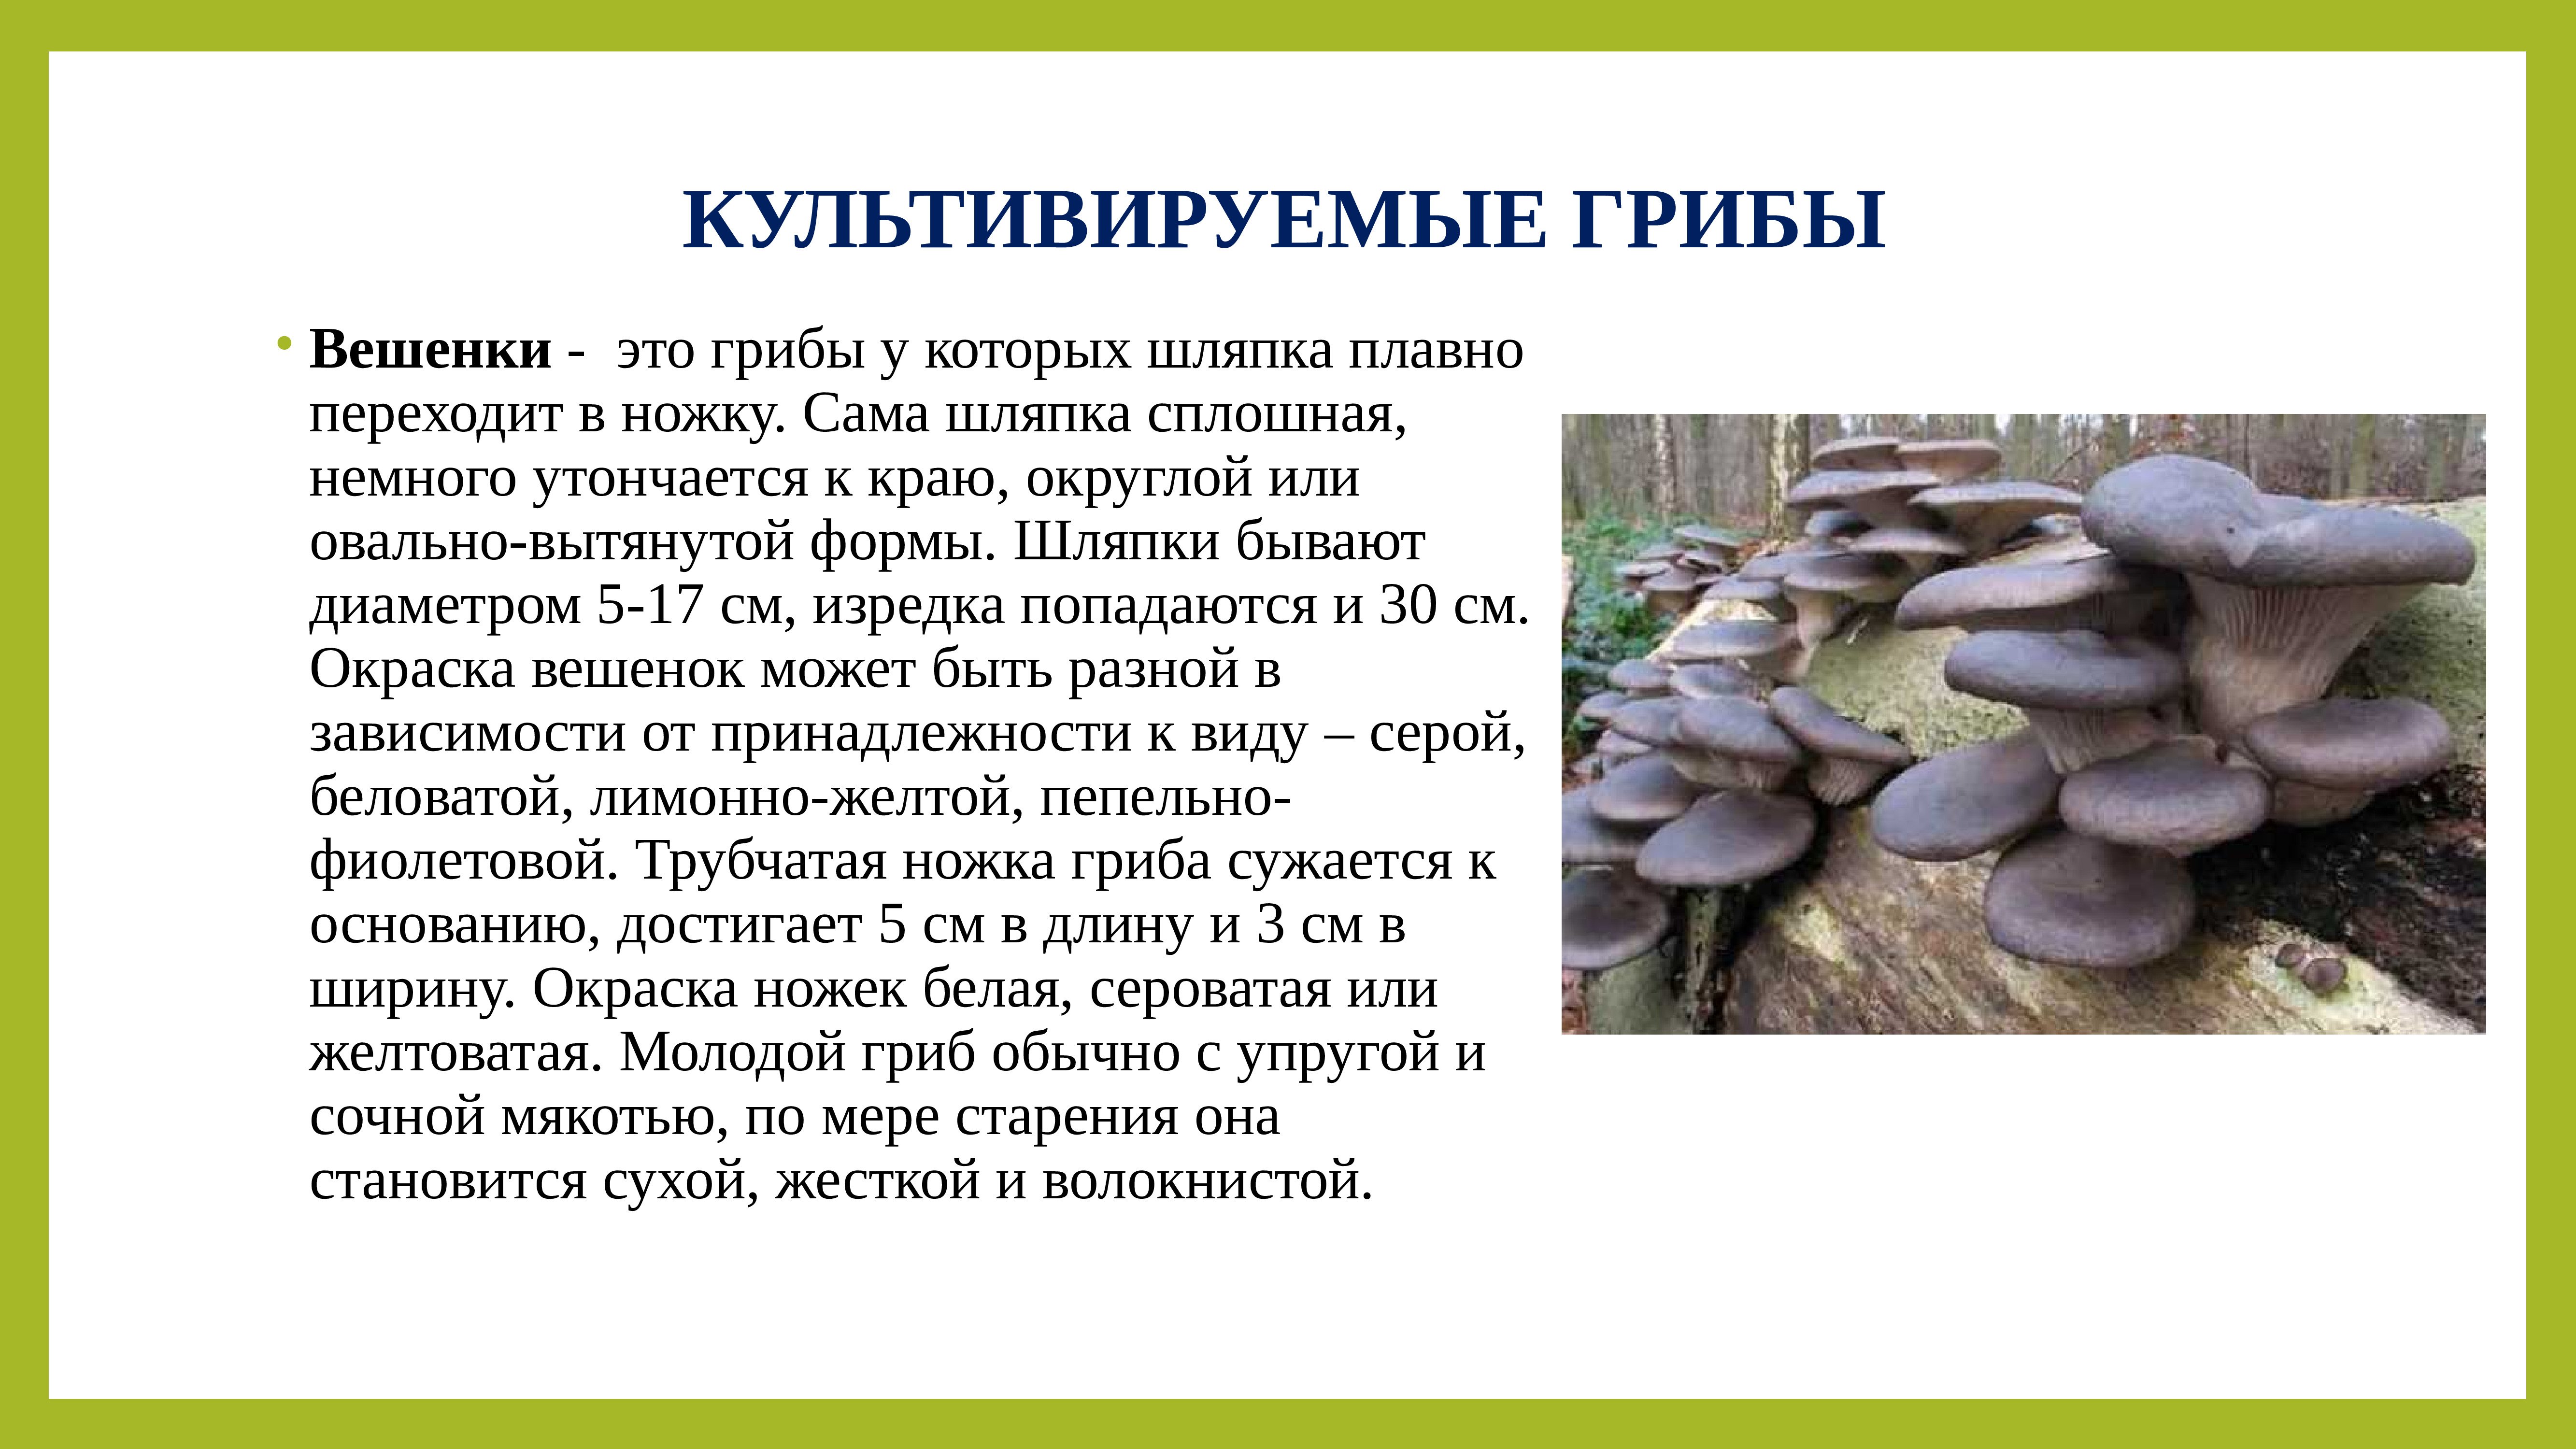 Культивированные грибы и условия выращивания. Культивируемые грибы вешенка. Внешний вид гриба строение. Культивируемые грибы и условия выращивания. Строение гриба вешенка.